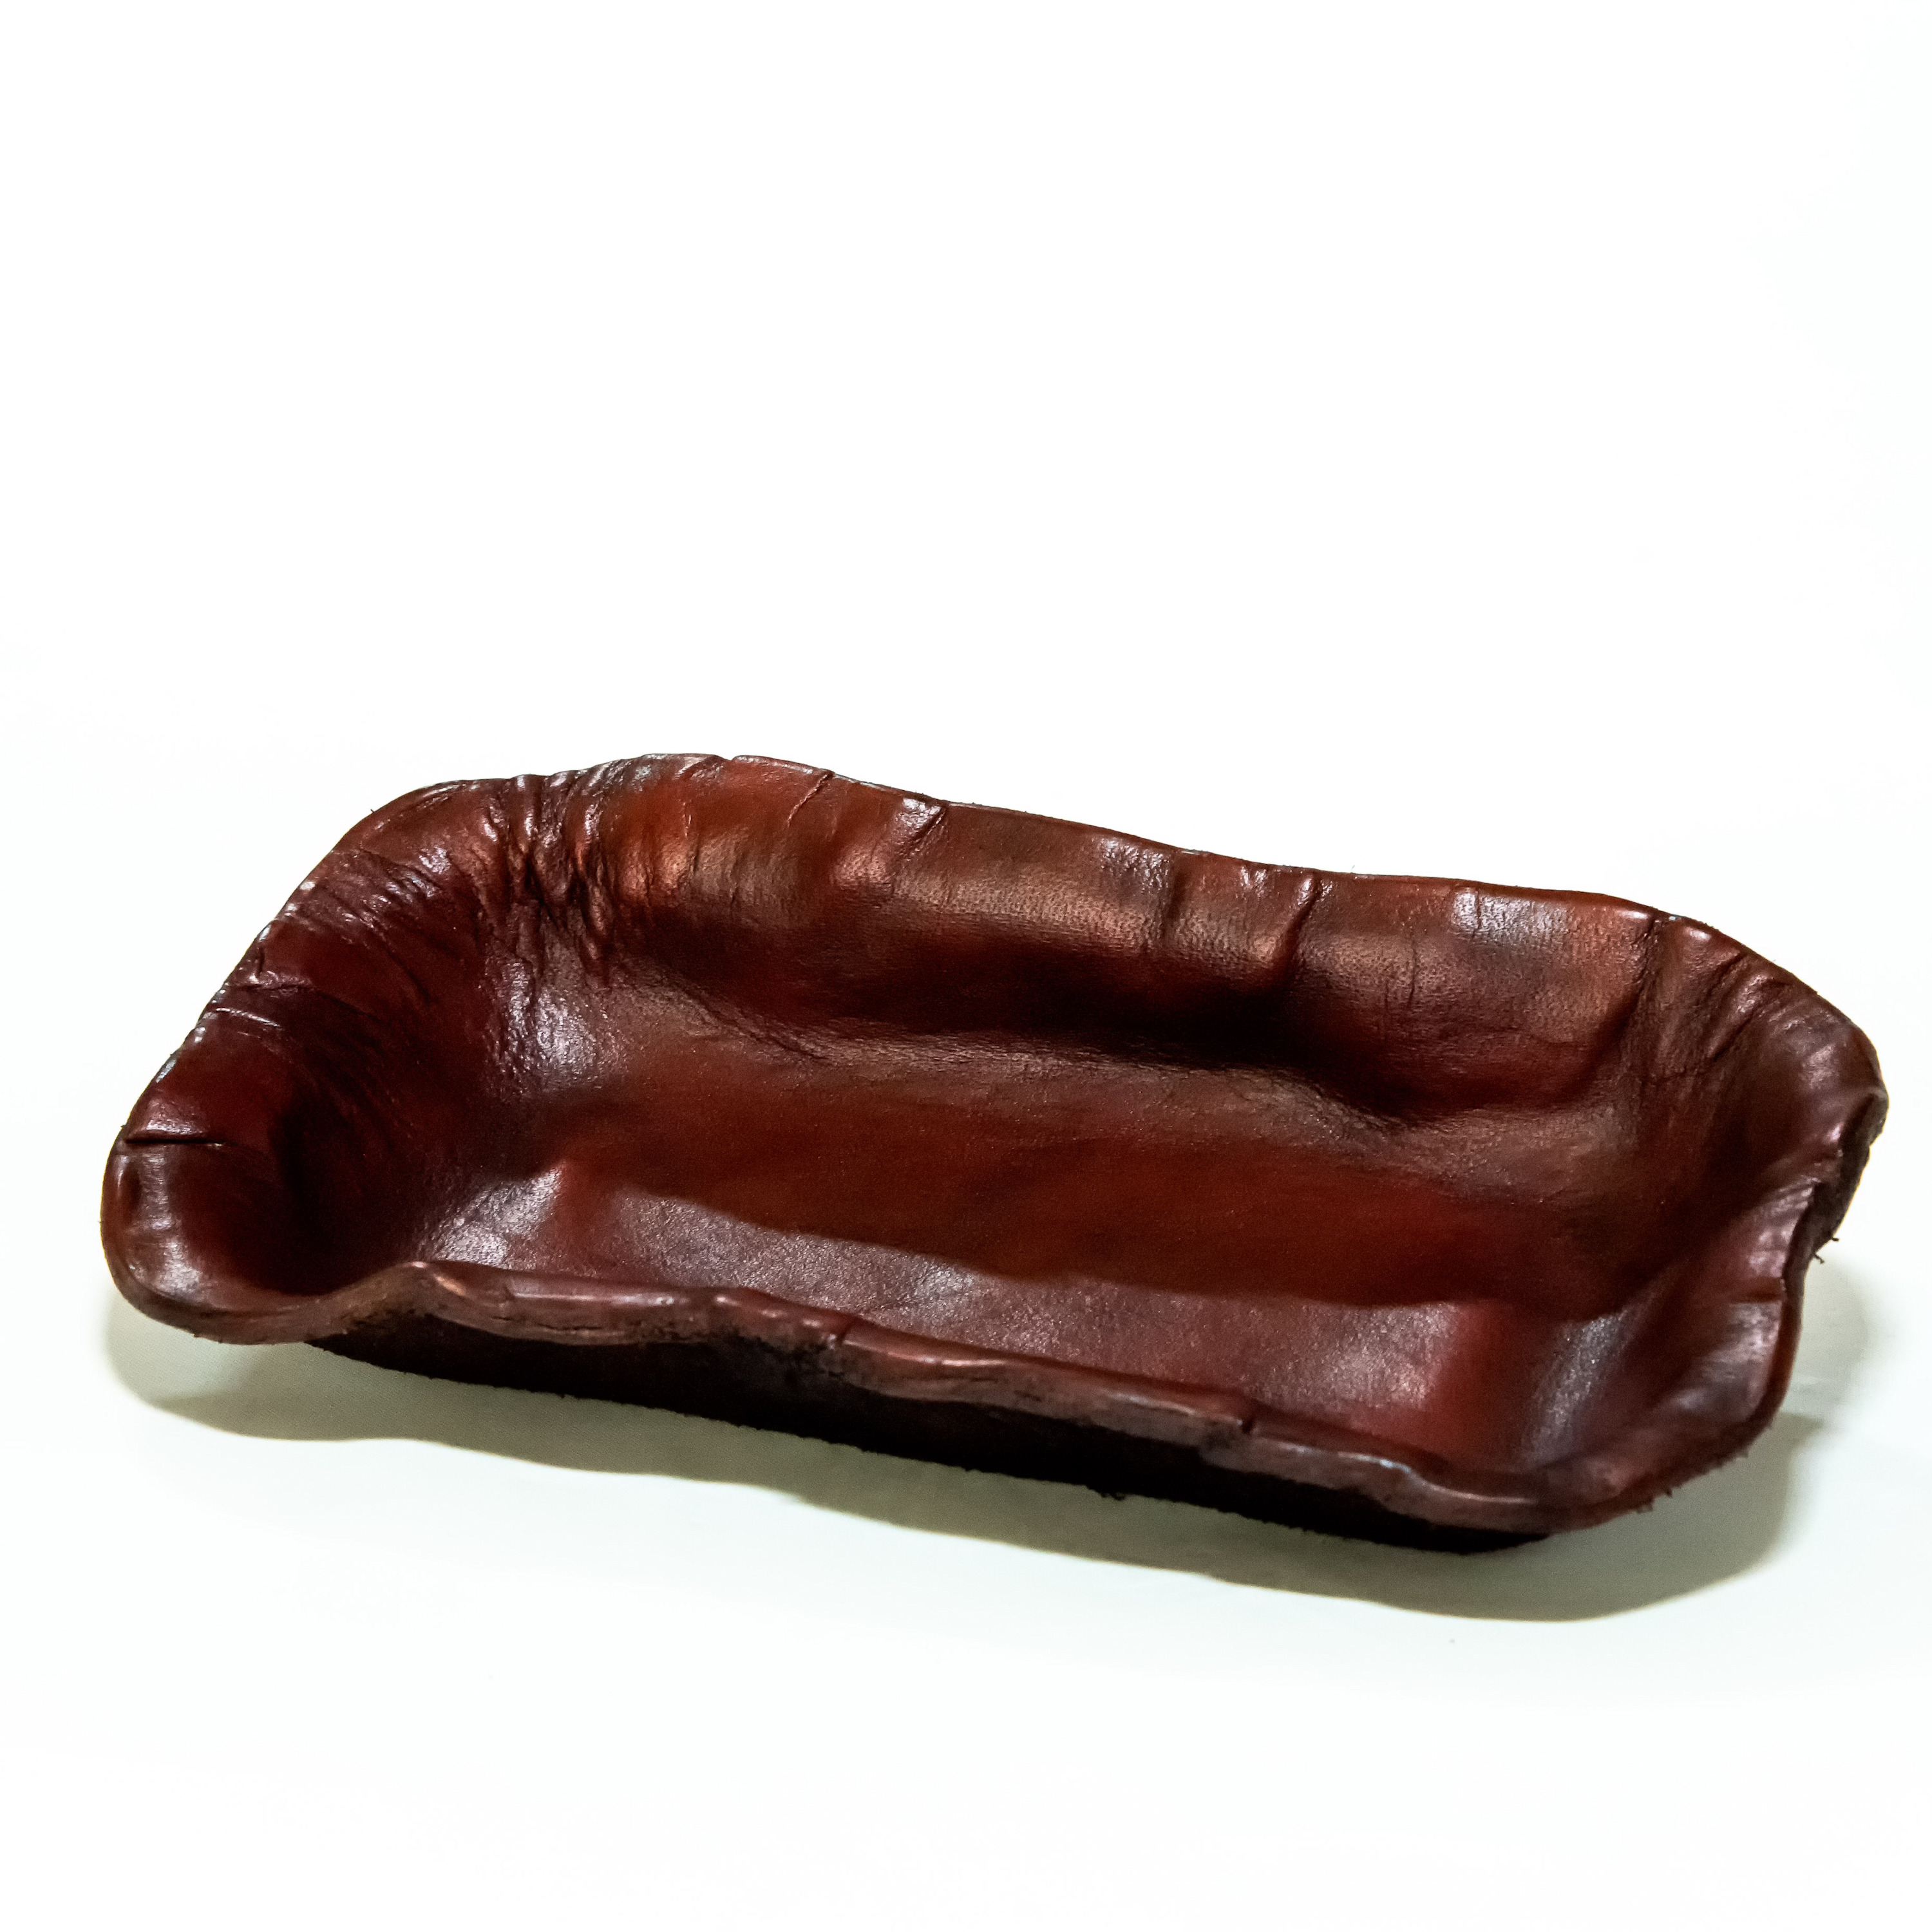 22 10 leather.sculpt web 1052 kgeocp